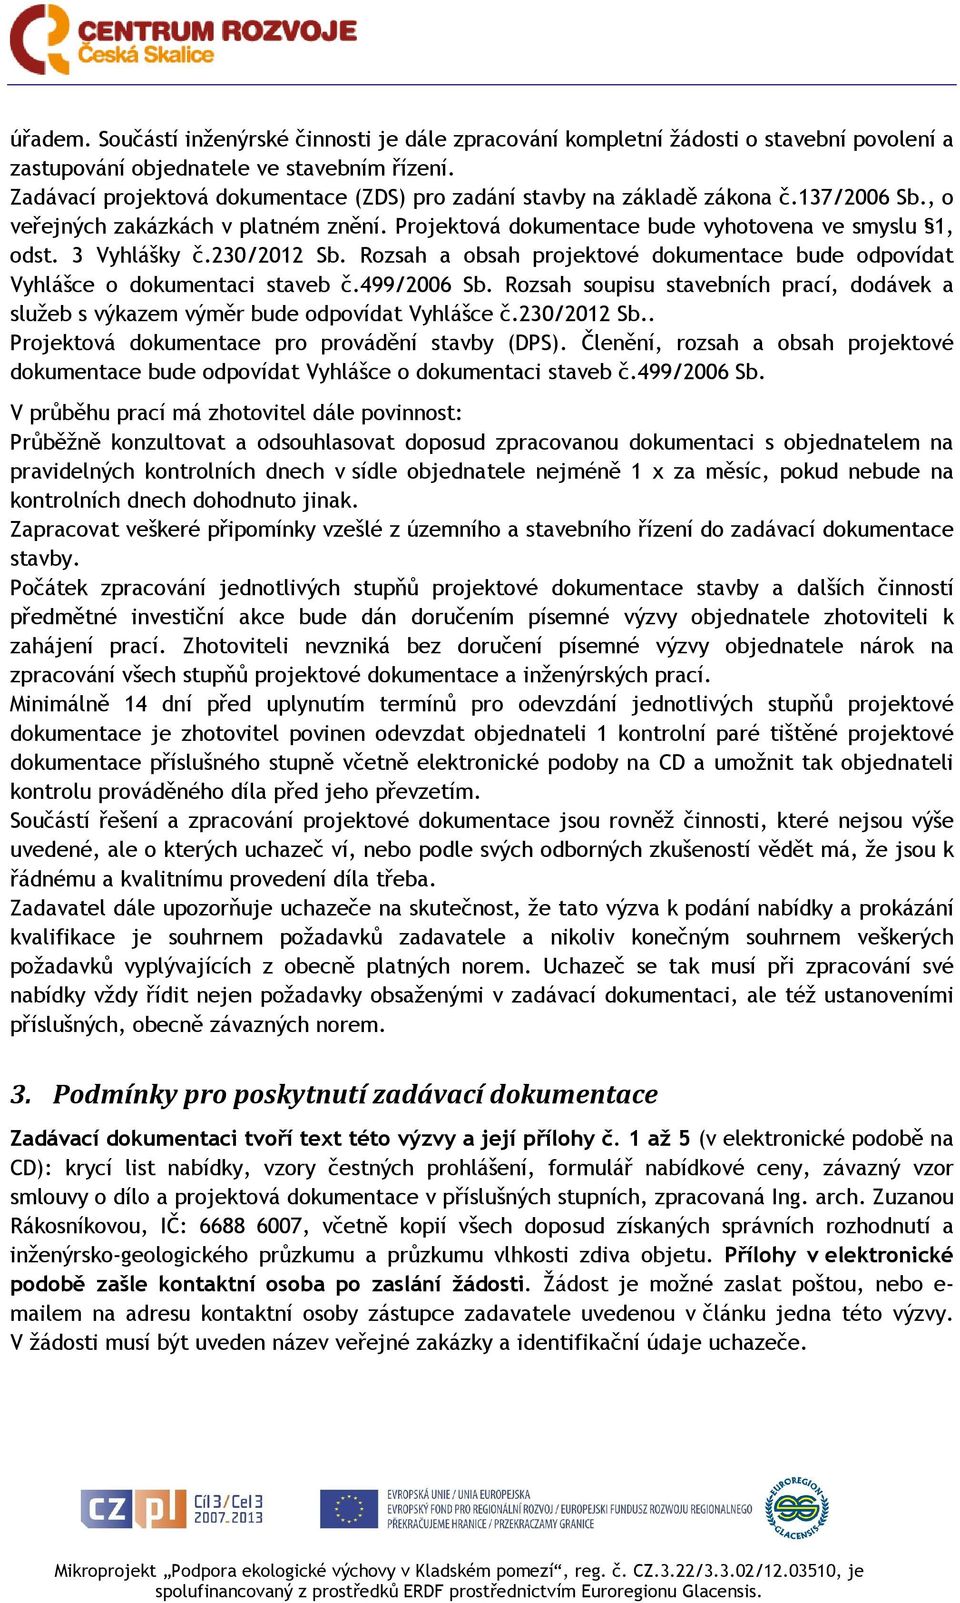 230/2012 Sb. Rozsah a obsah projektové dokumentace bude odpovídat Vyhlášce o dokumentaci staveb č.499/2006 Sb.